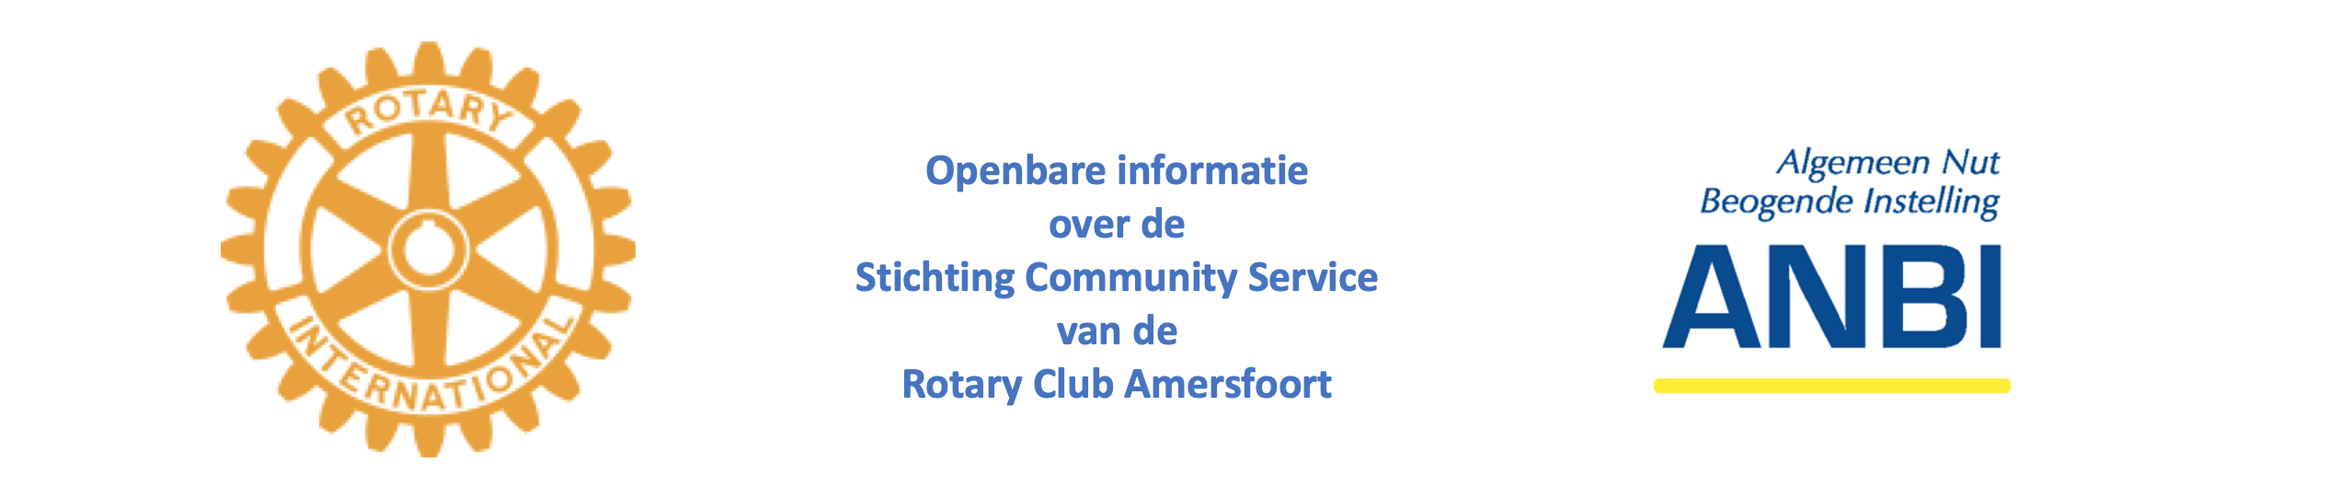 Openbare informatie over de Stichting Community Service van de Rotaryclub Amersfoort